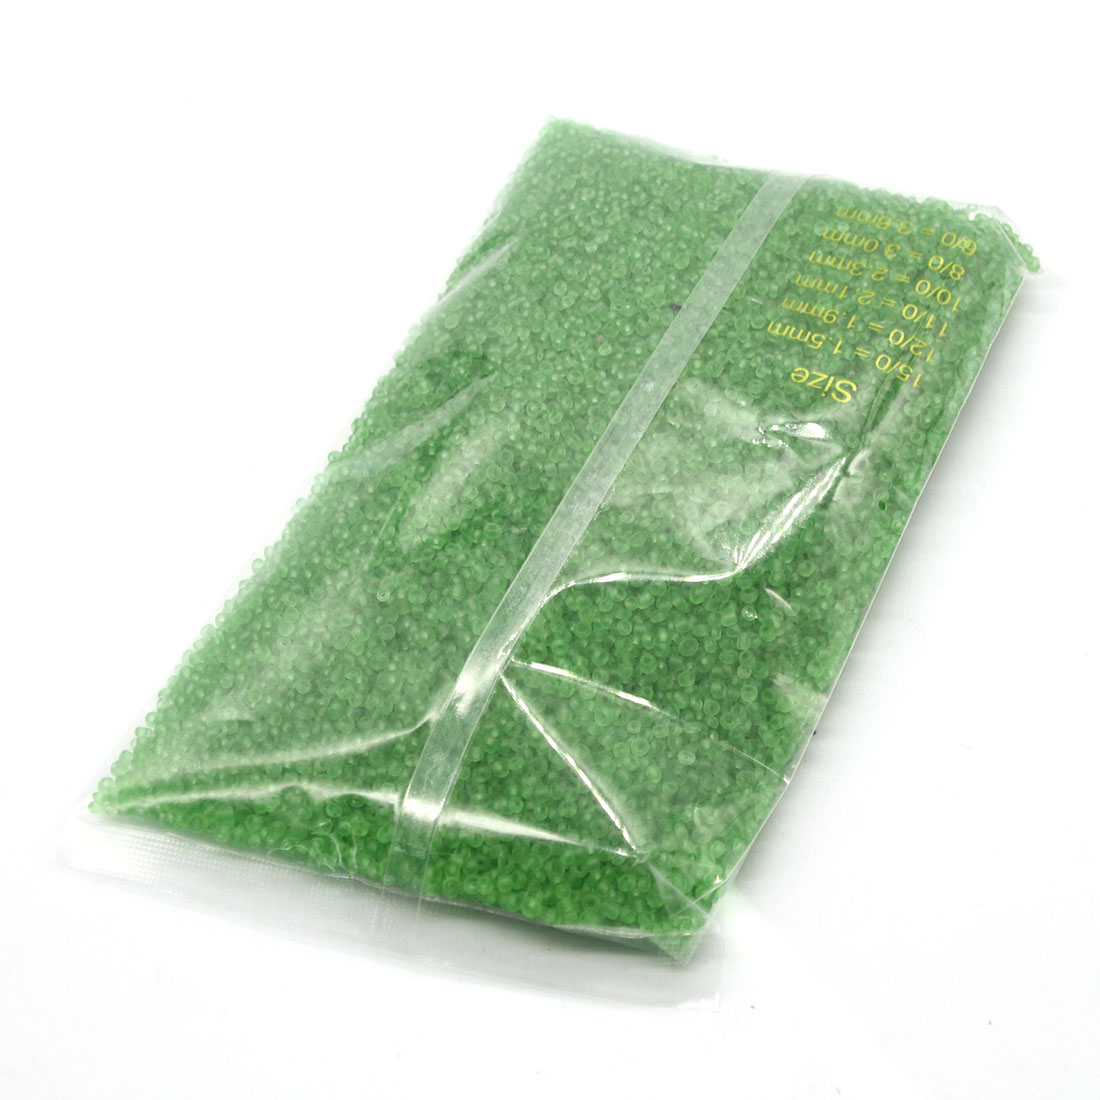 Apple green 2mm 30,000 packs